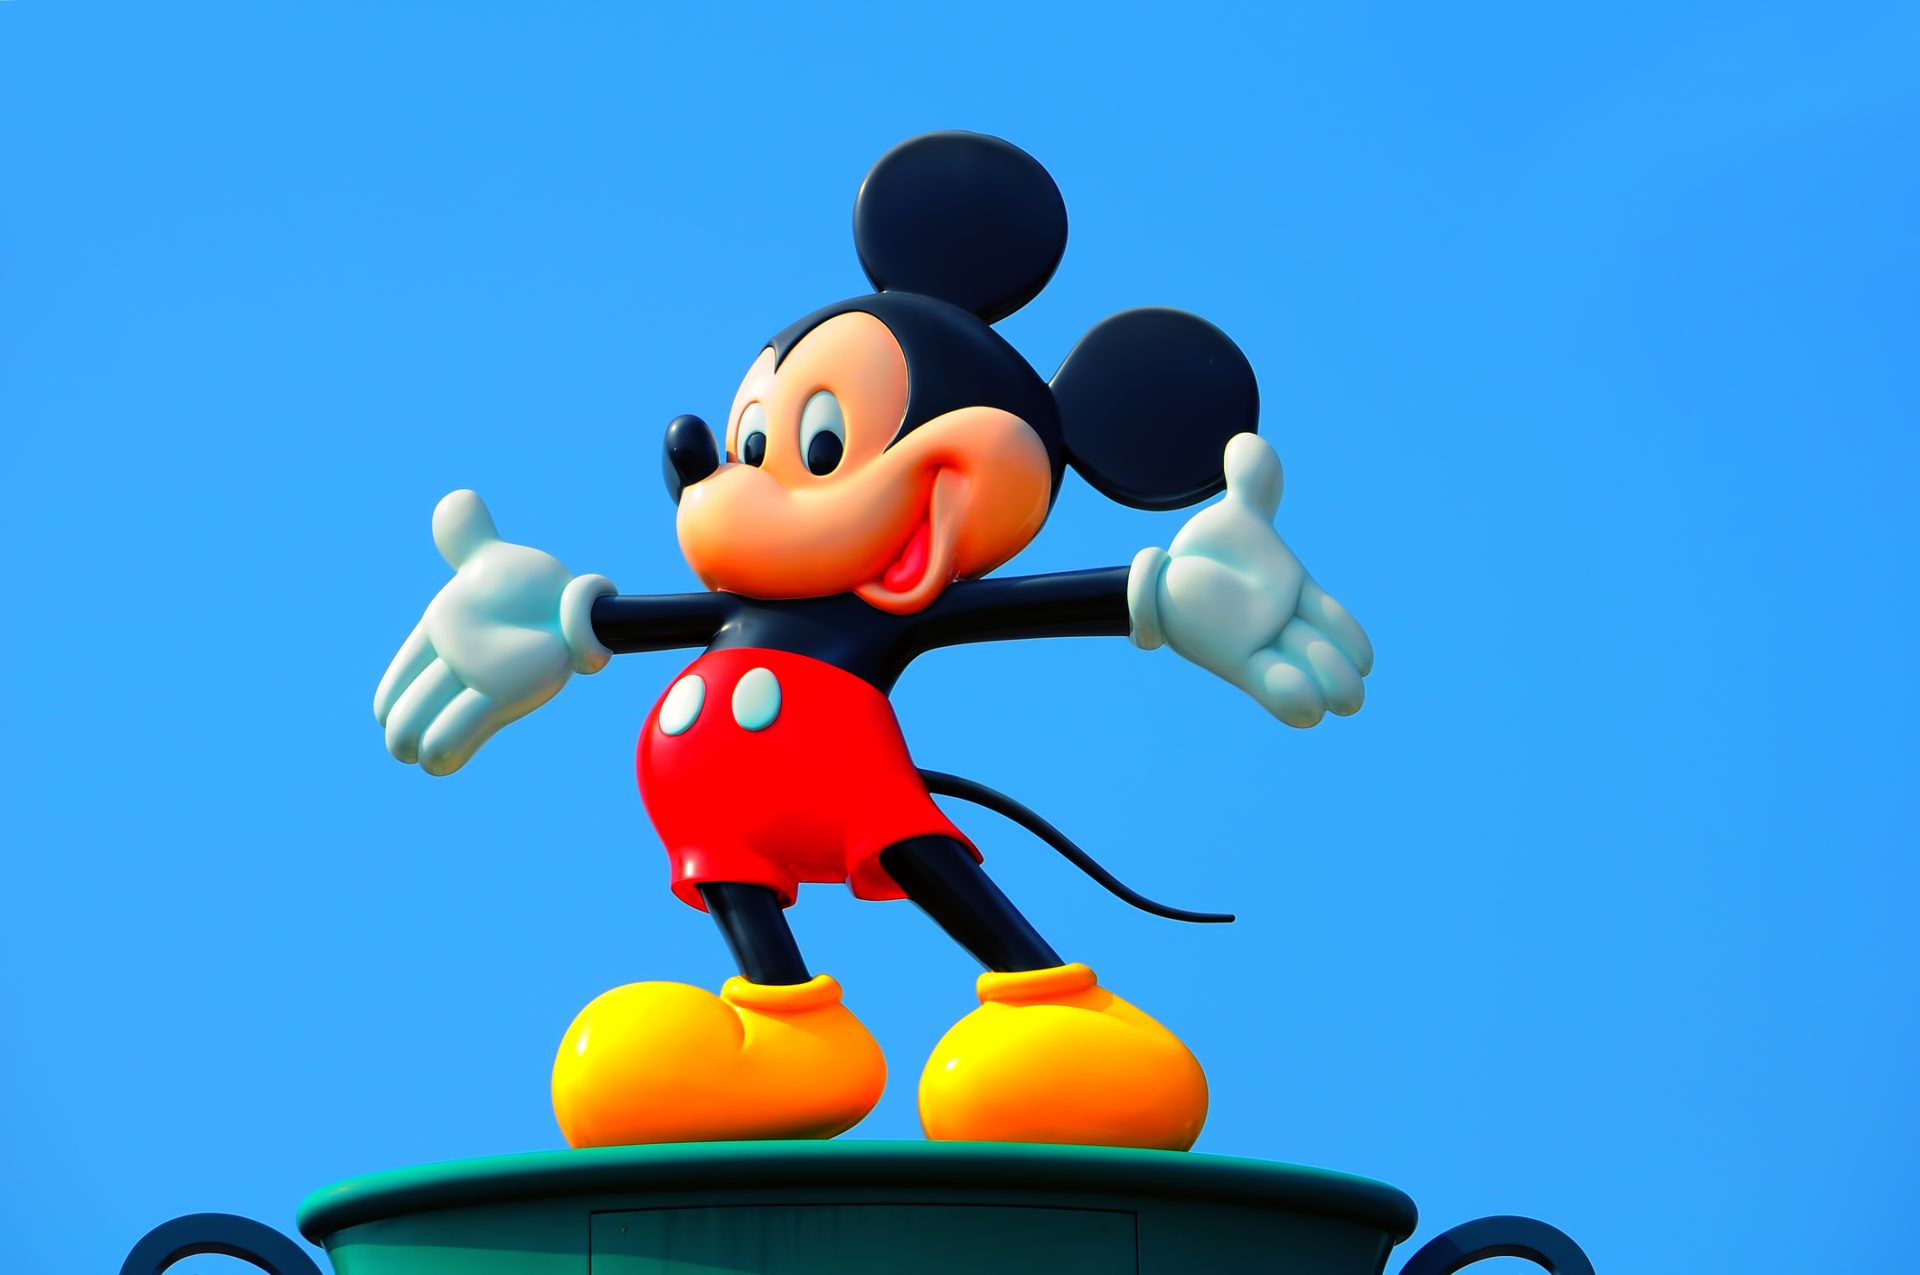 Polémica na China com corte de orelhas dos animais à Rato Mickey